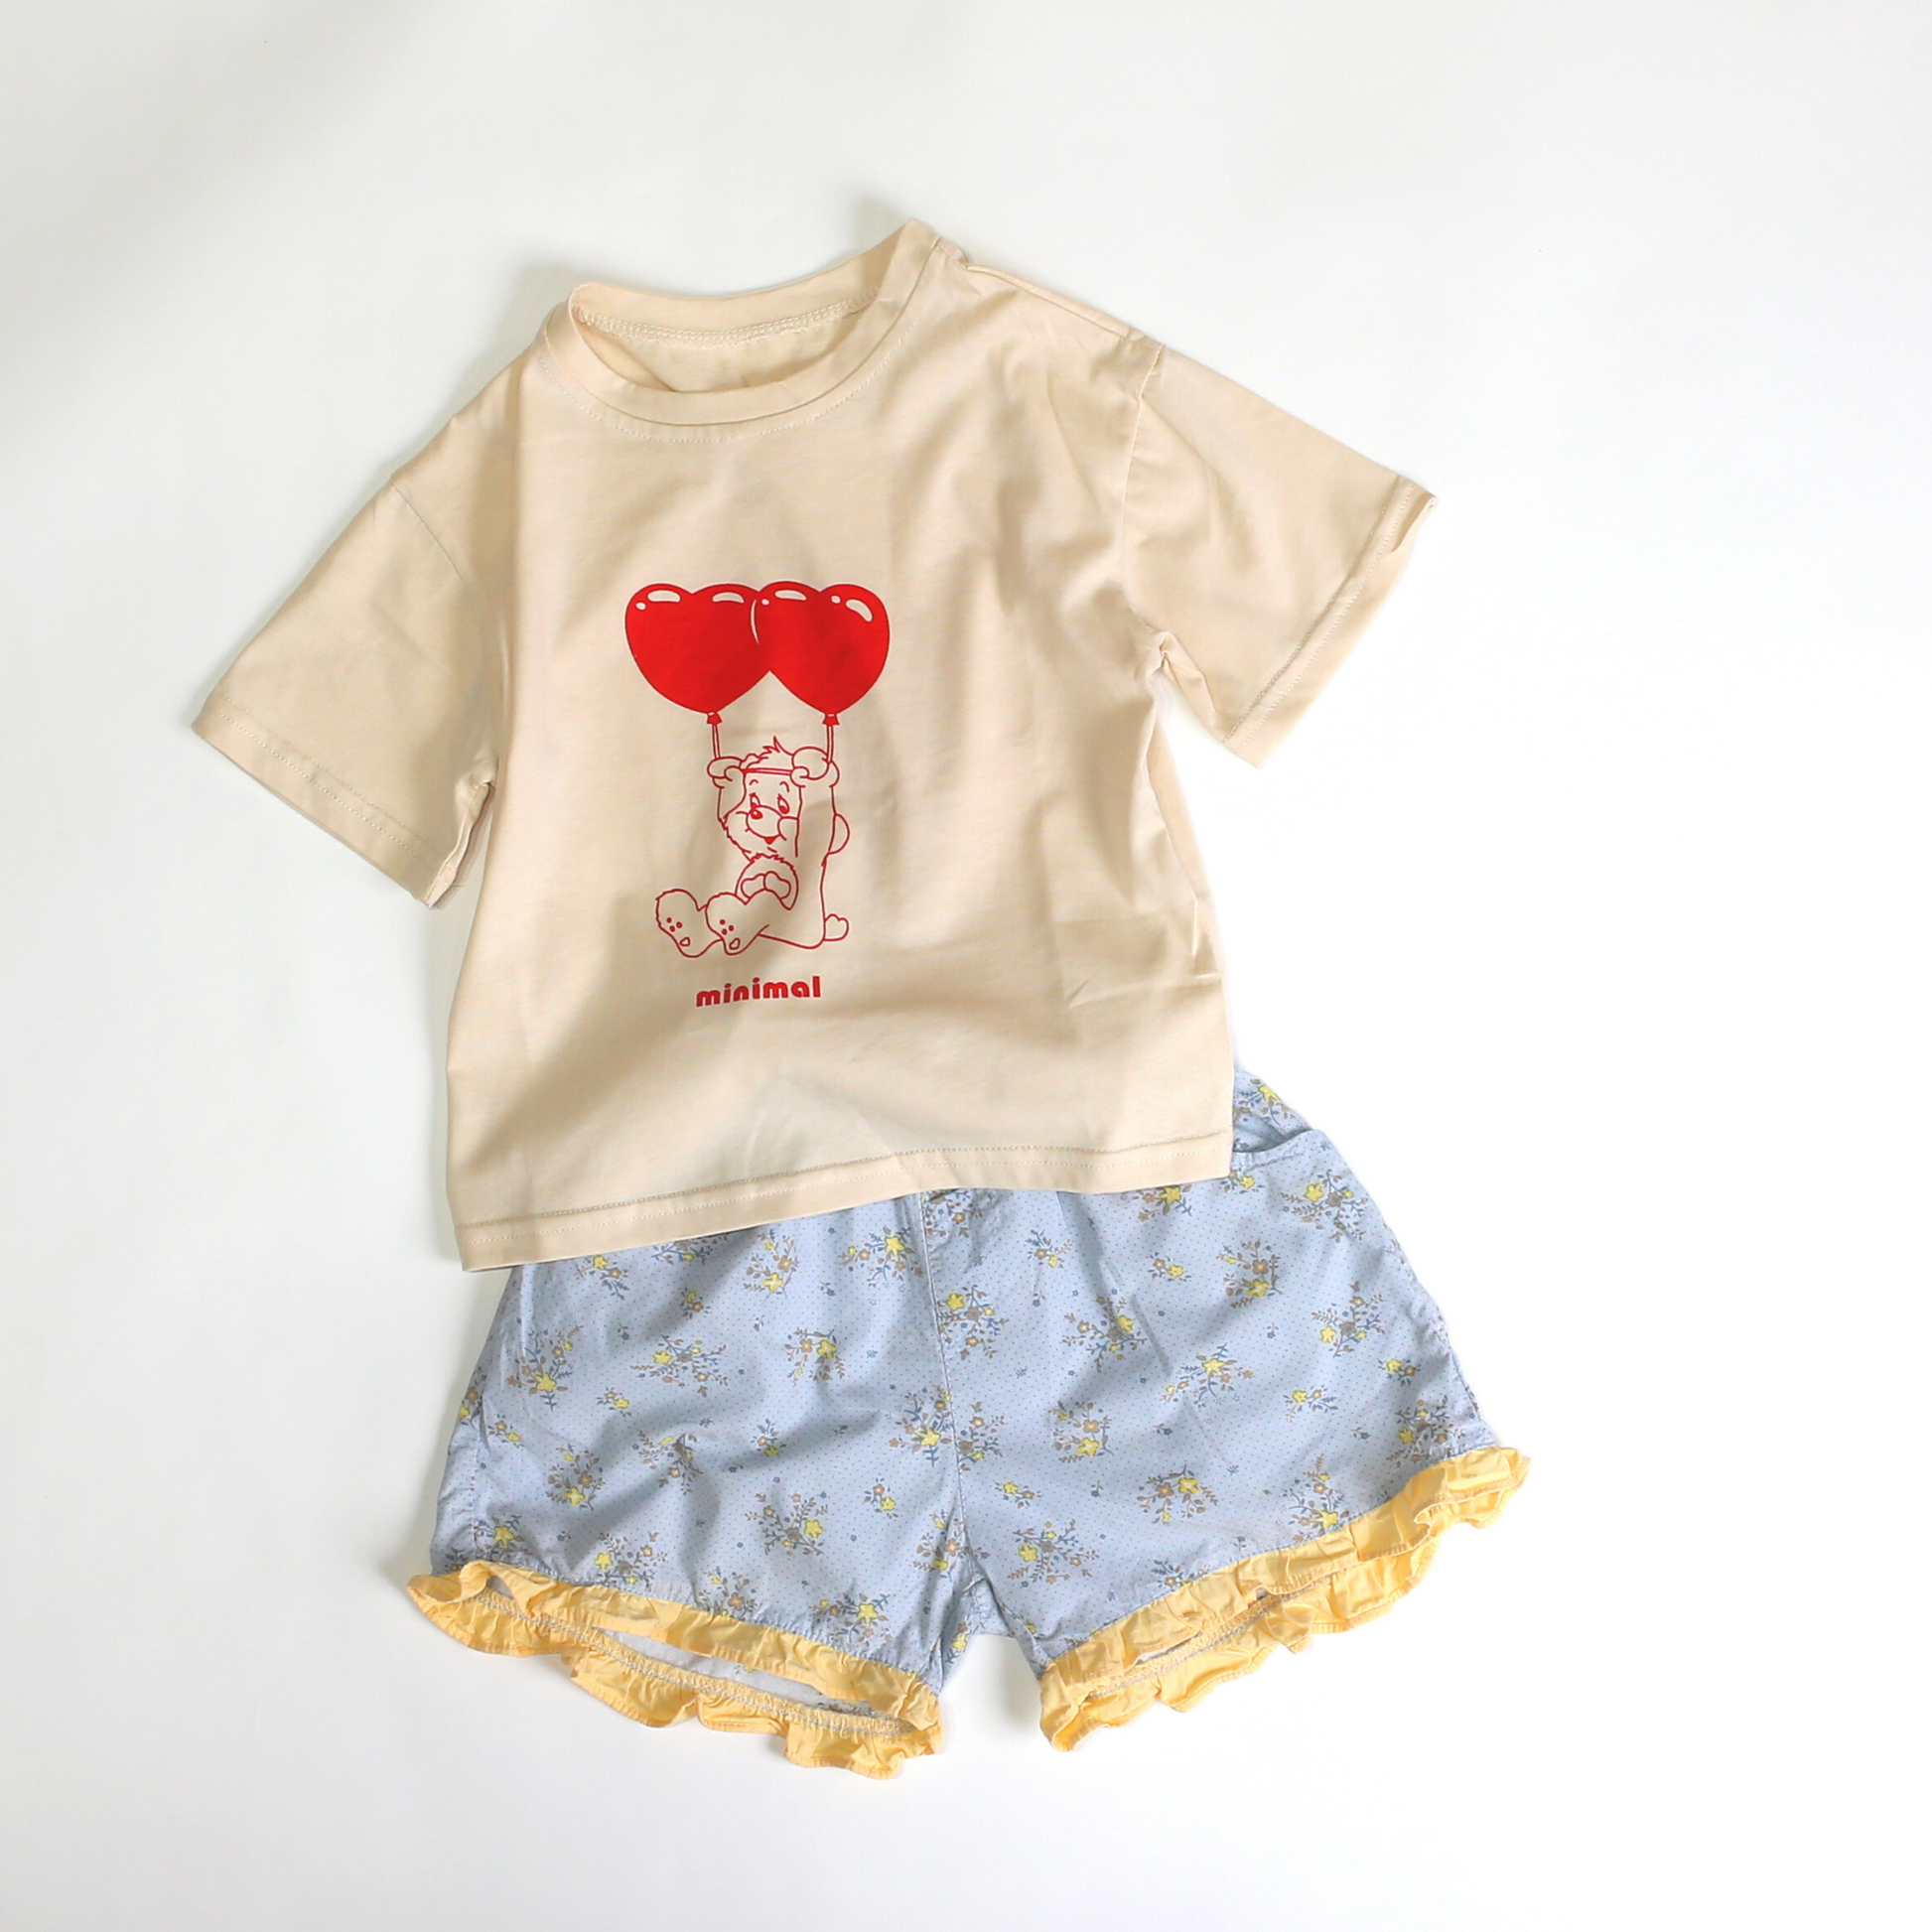 ハートバルーンベア Tシャツ / heart balloon bear tee (こども服) - kids clothes shop GUZUGUZU